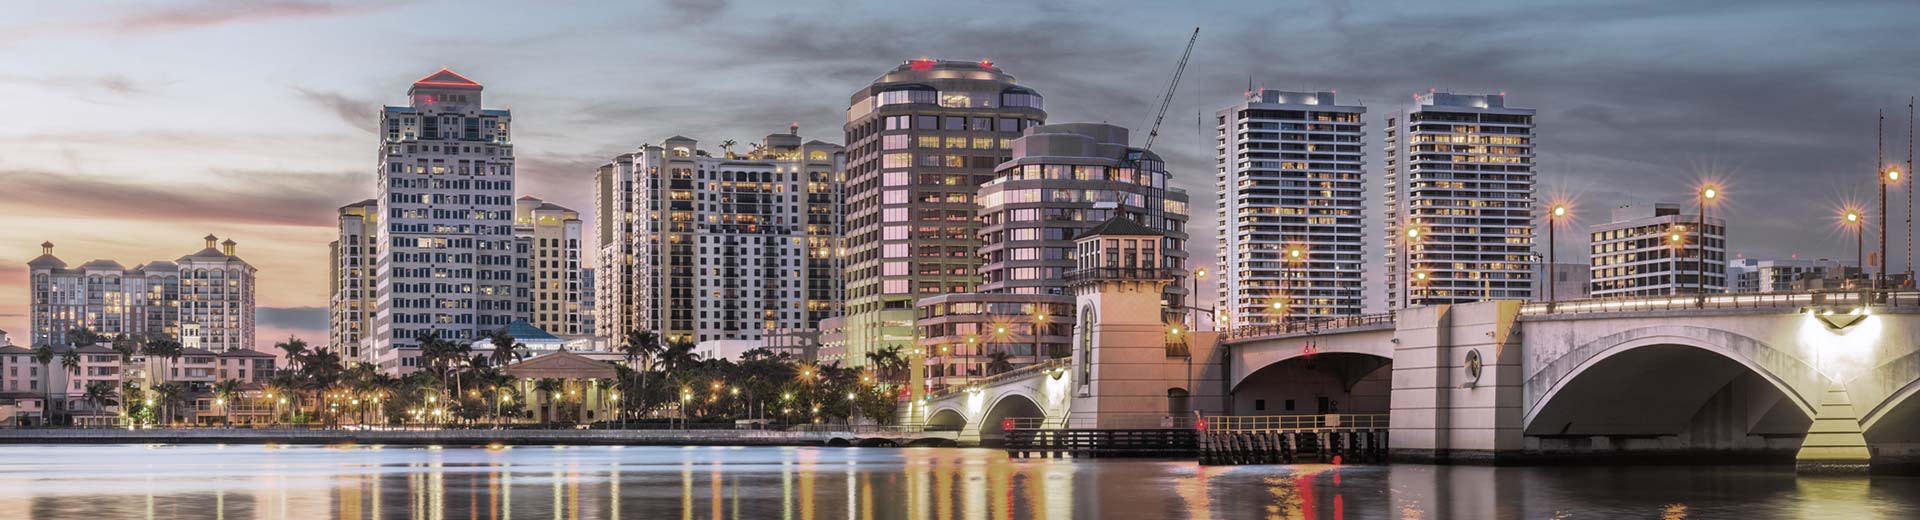 Los hoteles y el alojamiento de gran altura dominan el horizonte en Palm Beach.